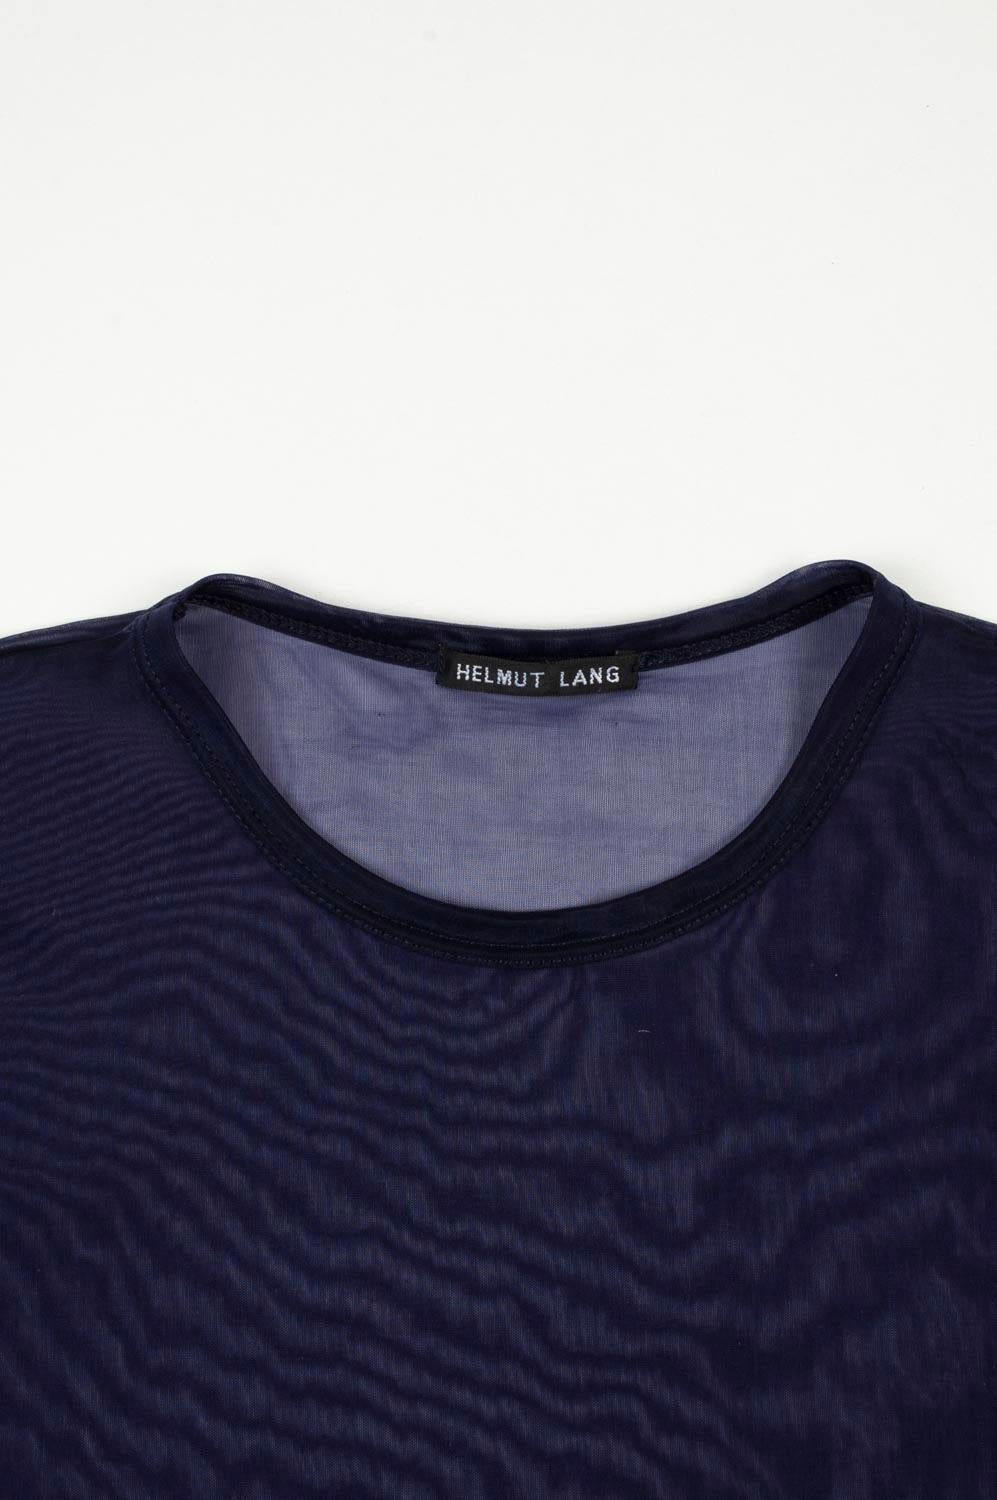 100% authentique vintage Helmut Lang Vintage Men T-Shirt 
Couleur : Bleu
(La couleur réelle peut varier légèrement en raison de l'interprétation individuelle de l'écran de l'ordinateur).
MATERIAL : le Label de lavage n'est pas présent mais il s'agit